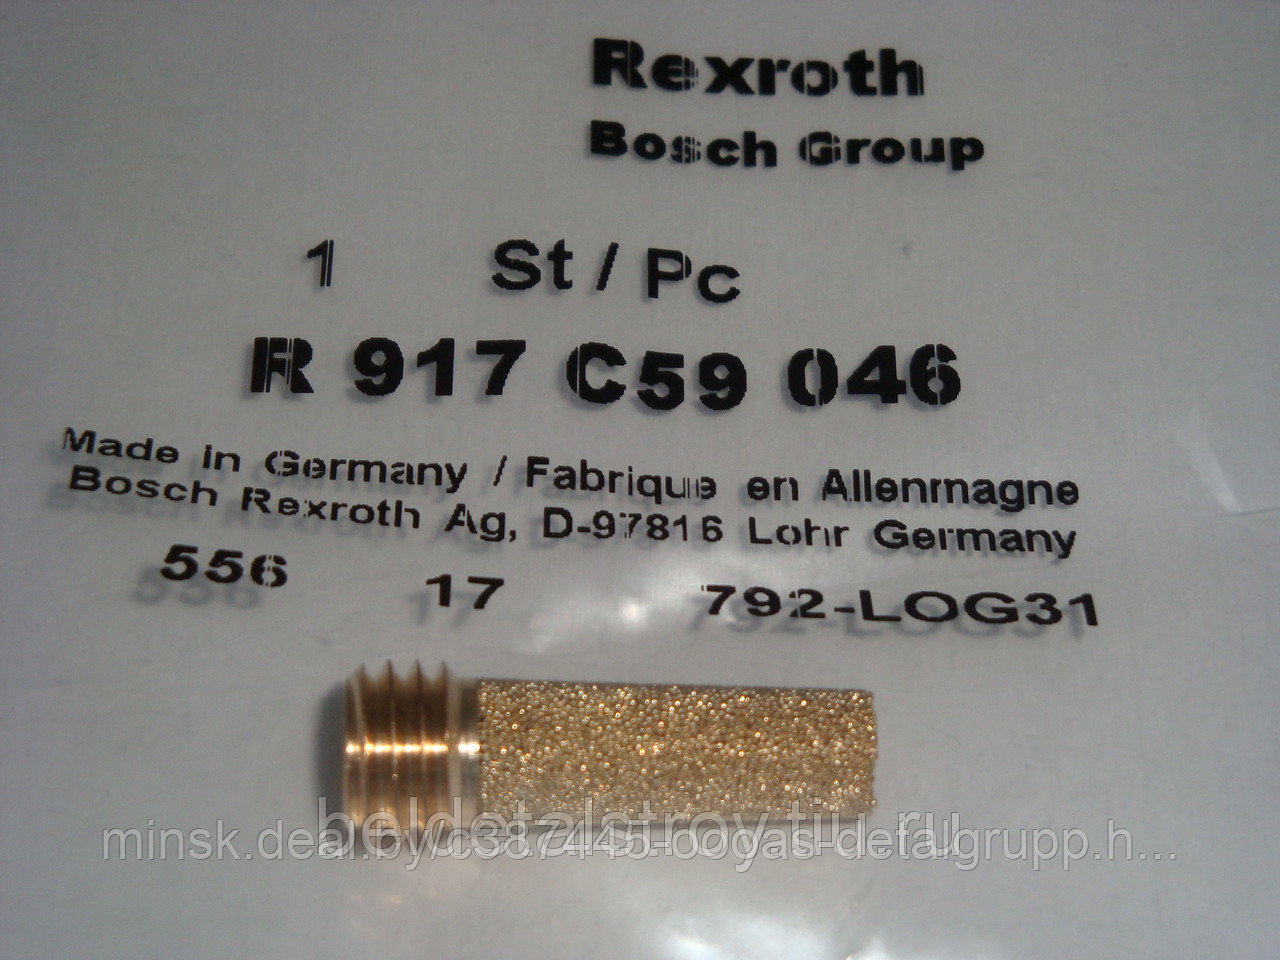 Фильтр гидравлический грубой очистки (бронзовый) x1 Bosch Rexroth Оригинал R917C59046 МТЗ 3522 ДЦ (DEUTZ)